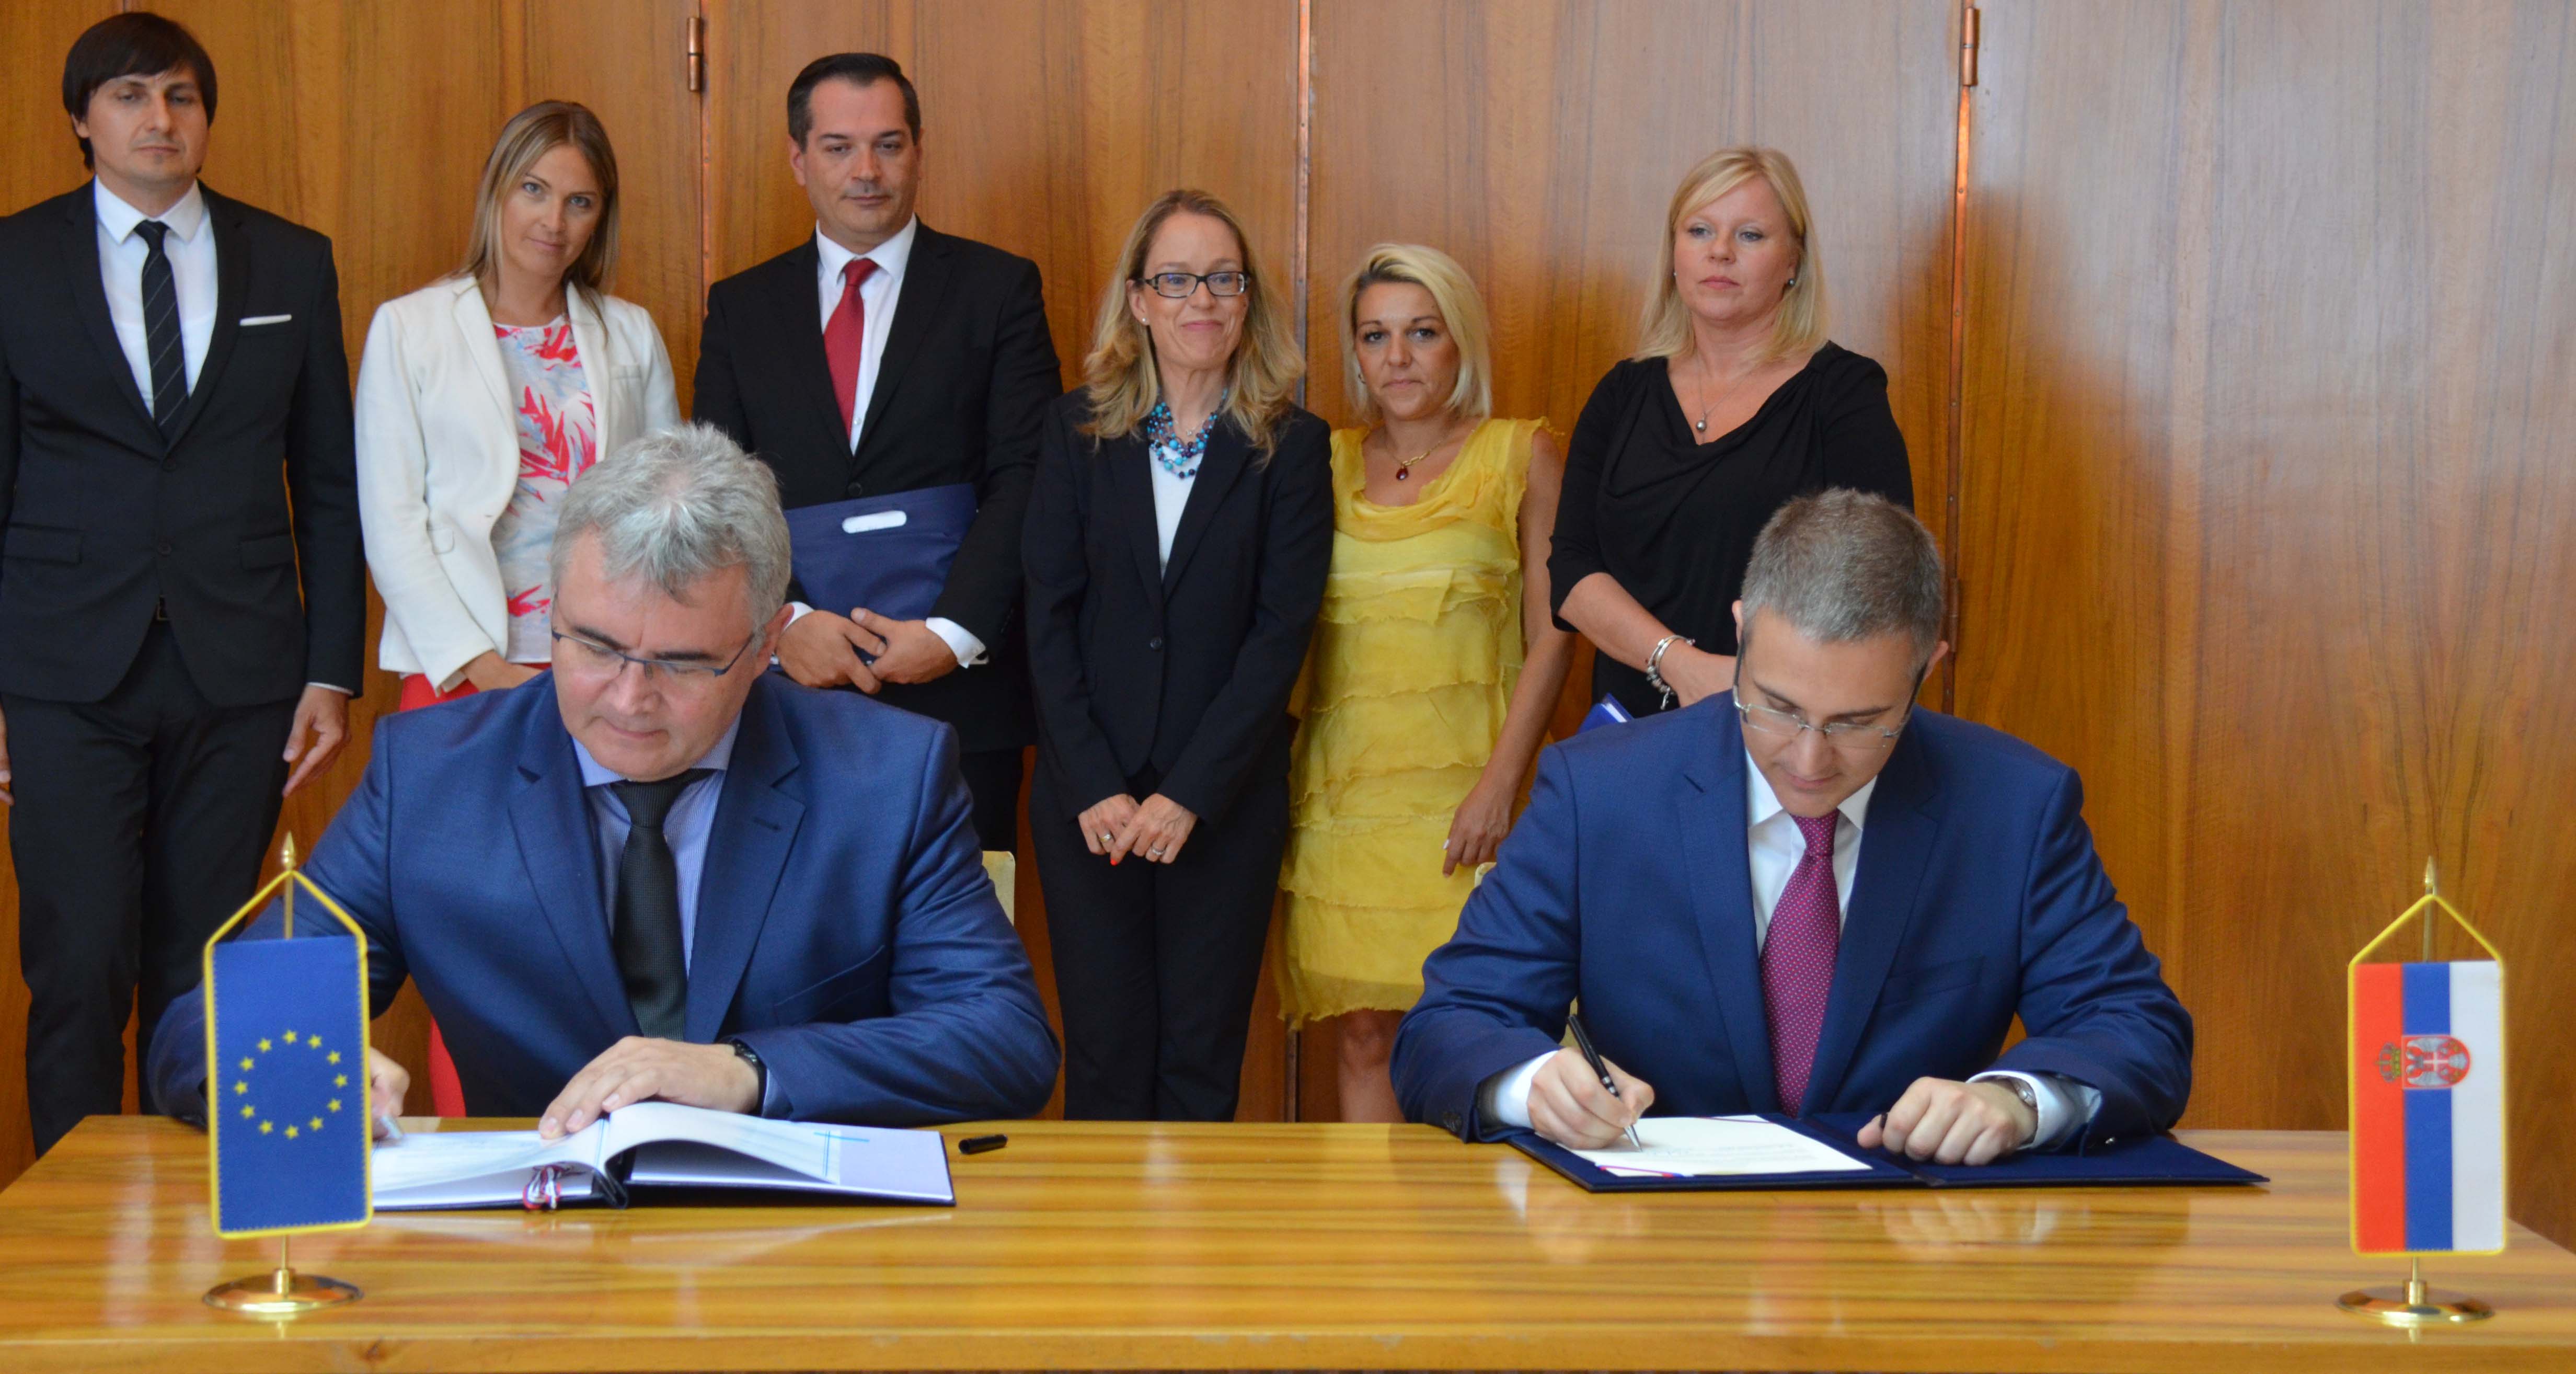 Стефановић и Шредер потписали радни аранжман који ће припадницима МУП-а омогућити различите обуке у оквиру ЦЕПОЛ-а